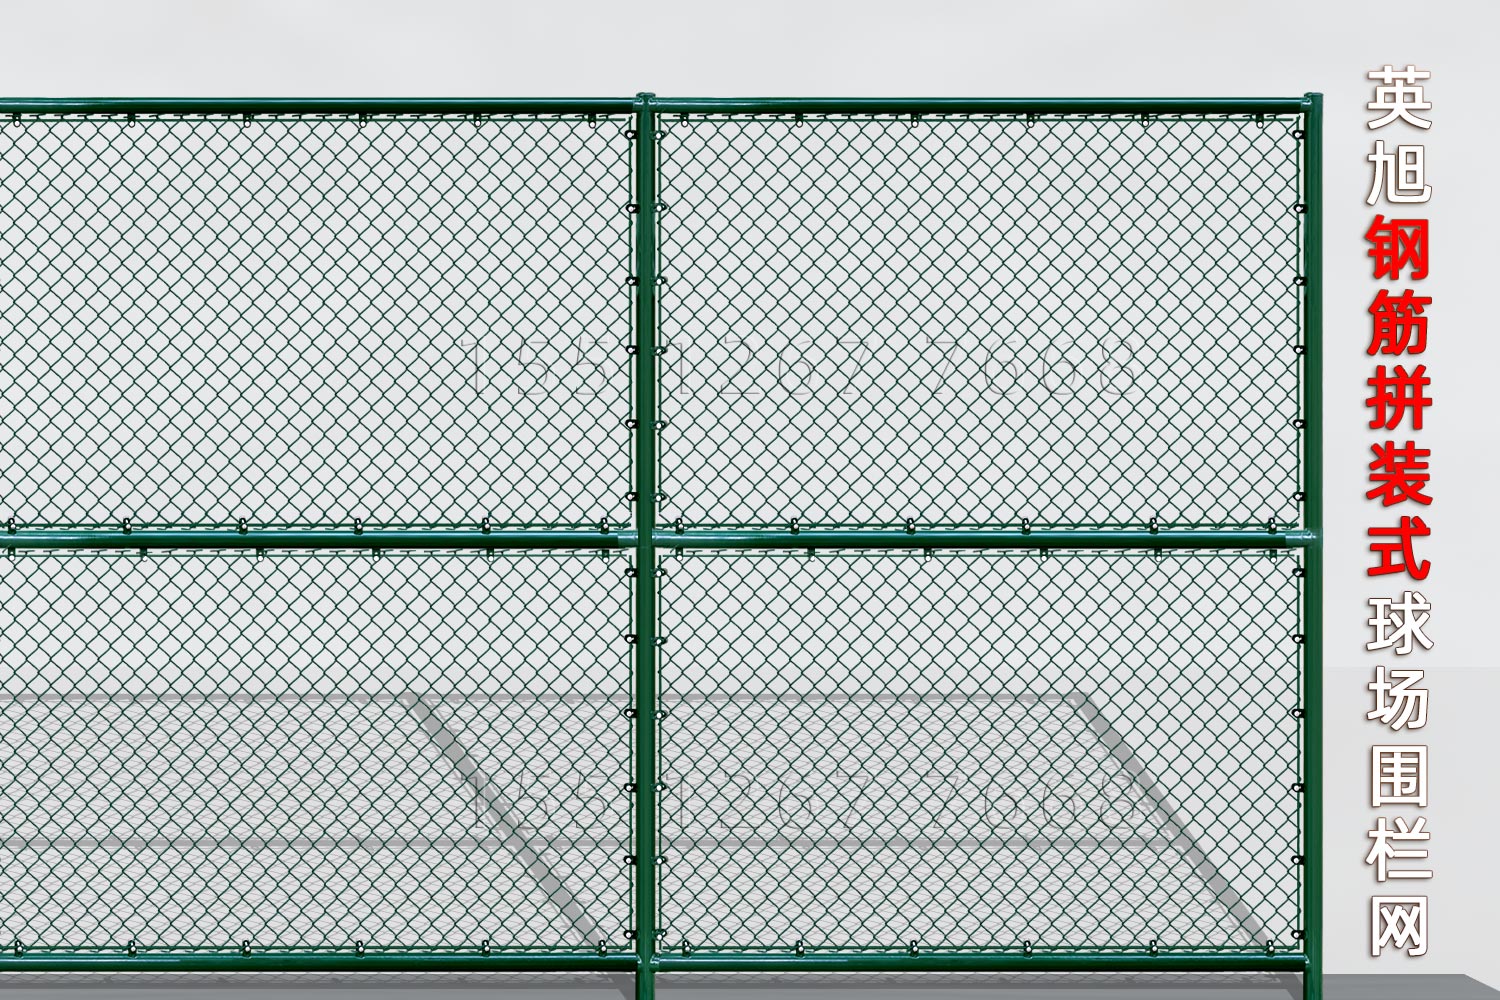 广东钢筋组装式球场围栏网